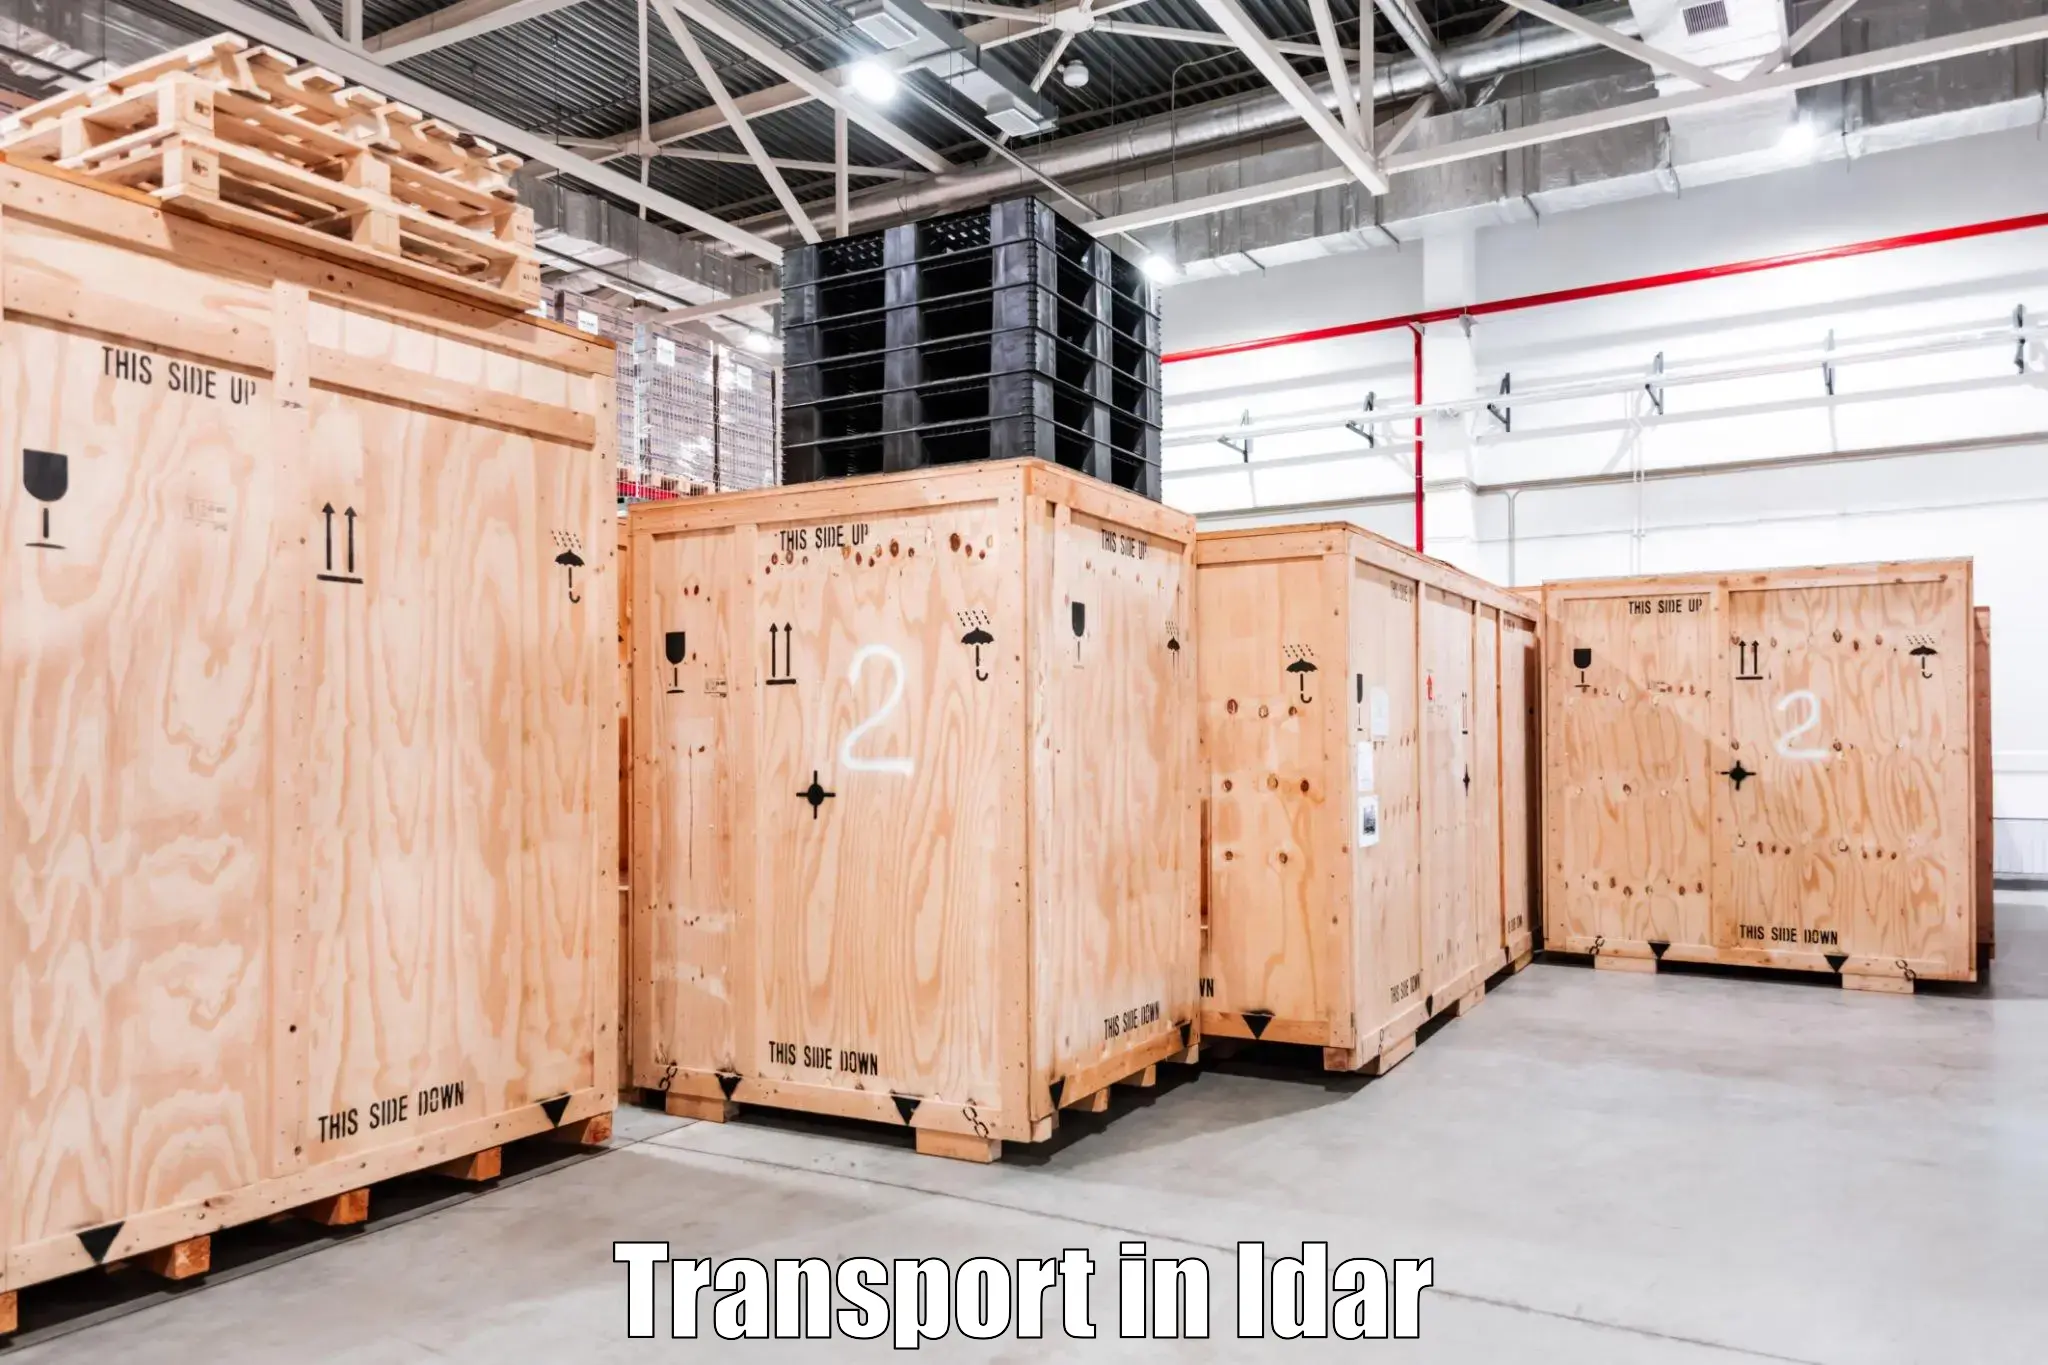 Furniture transport service in Idar